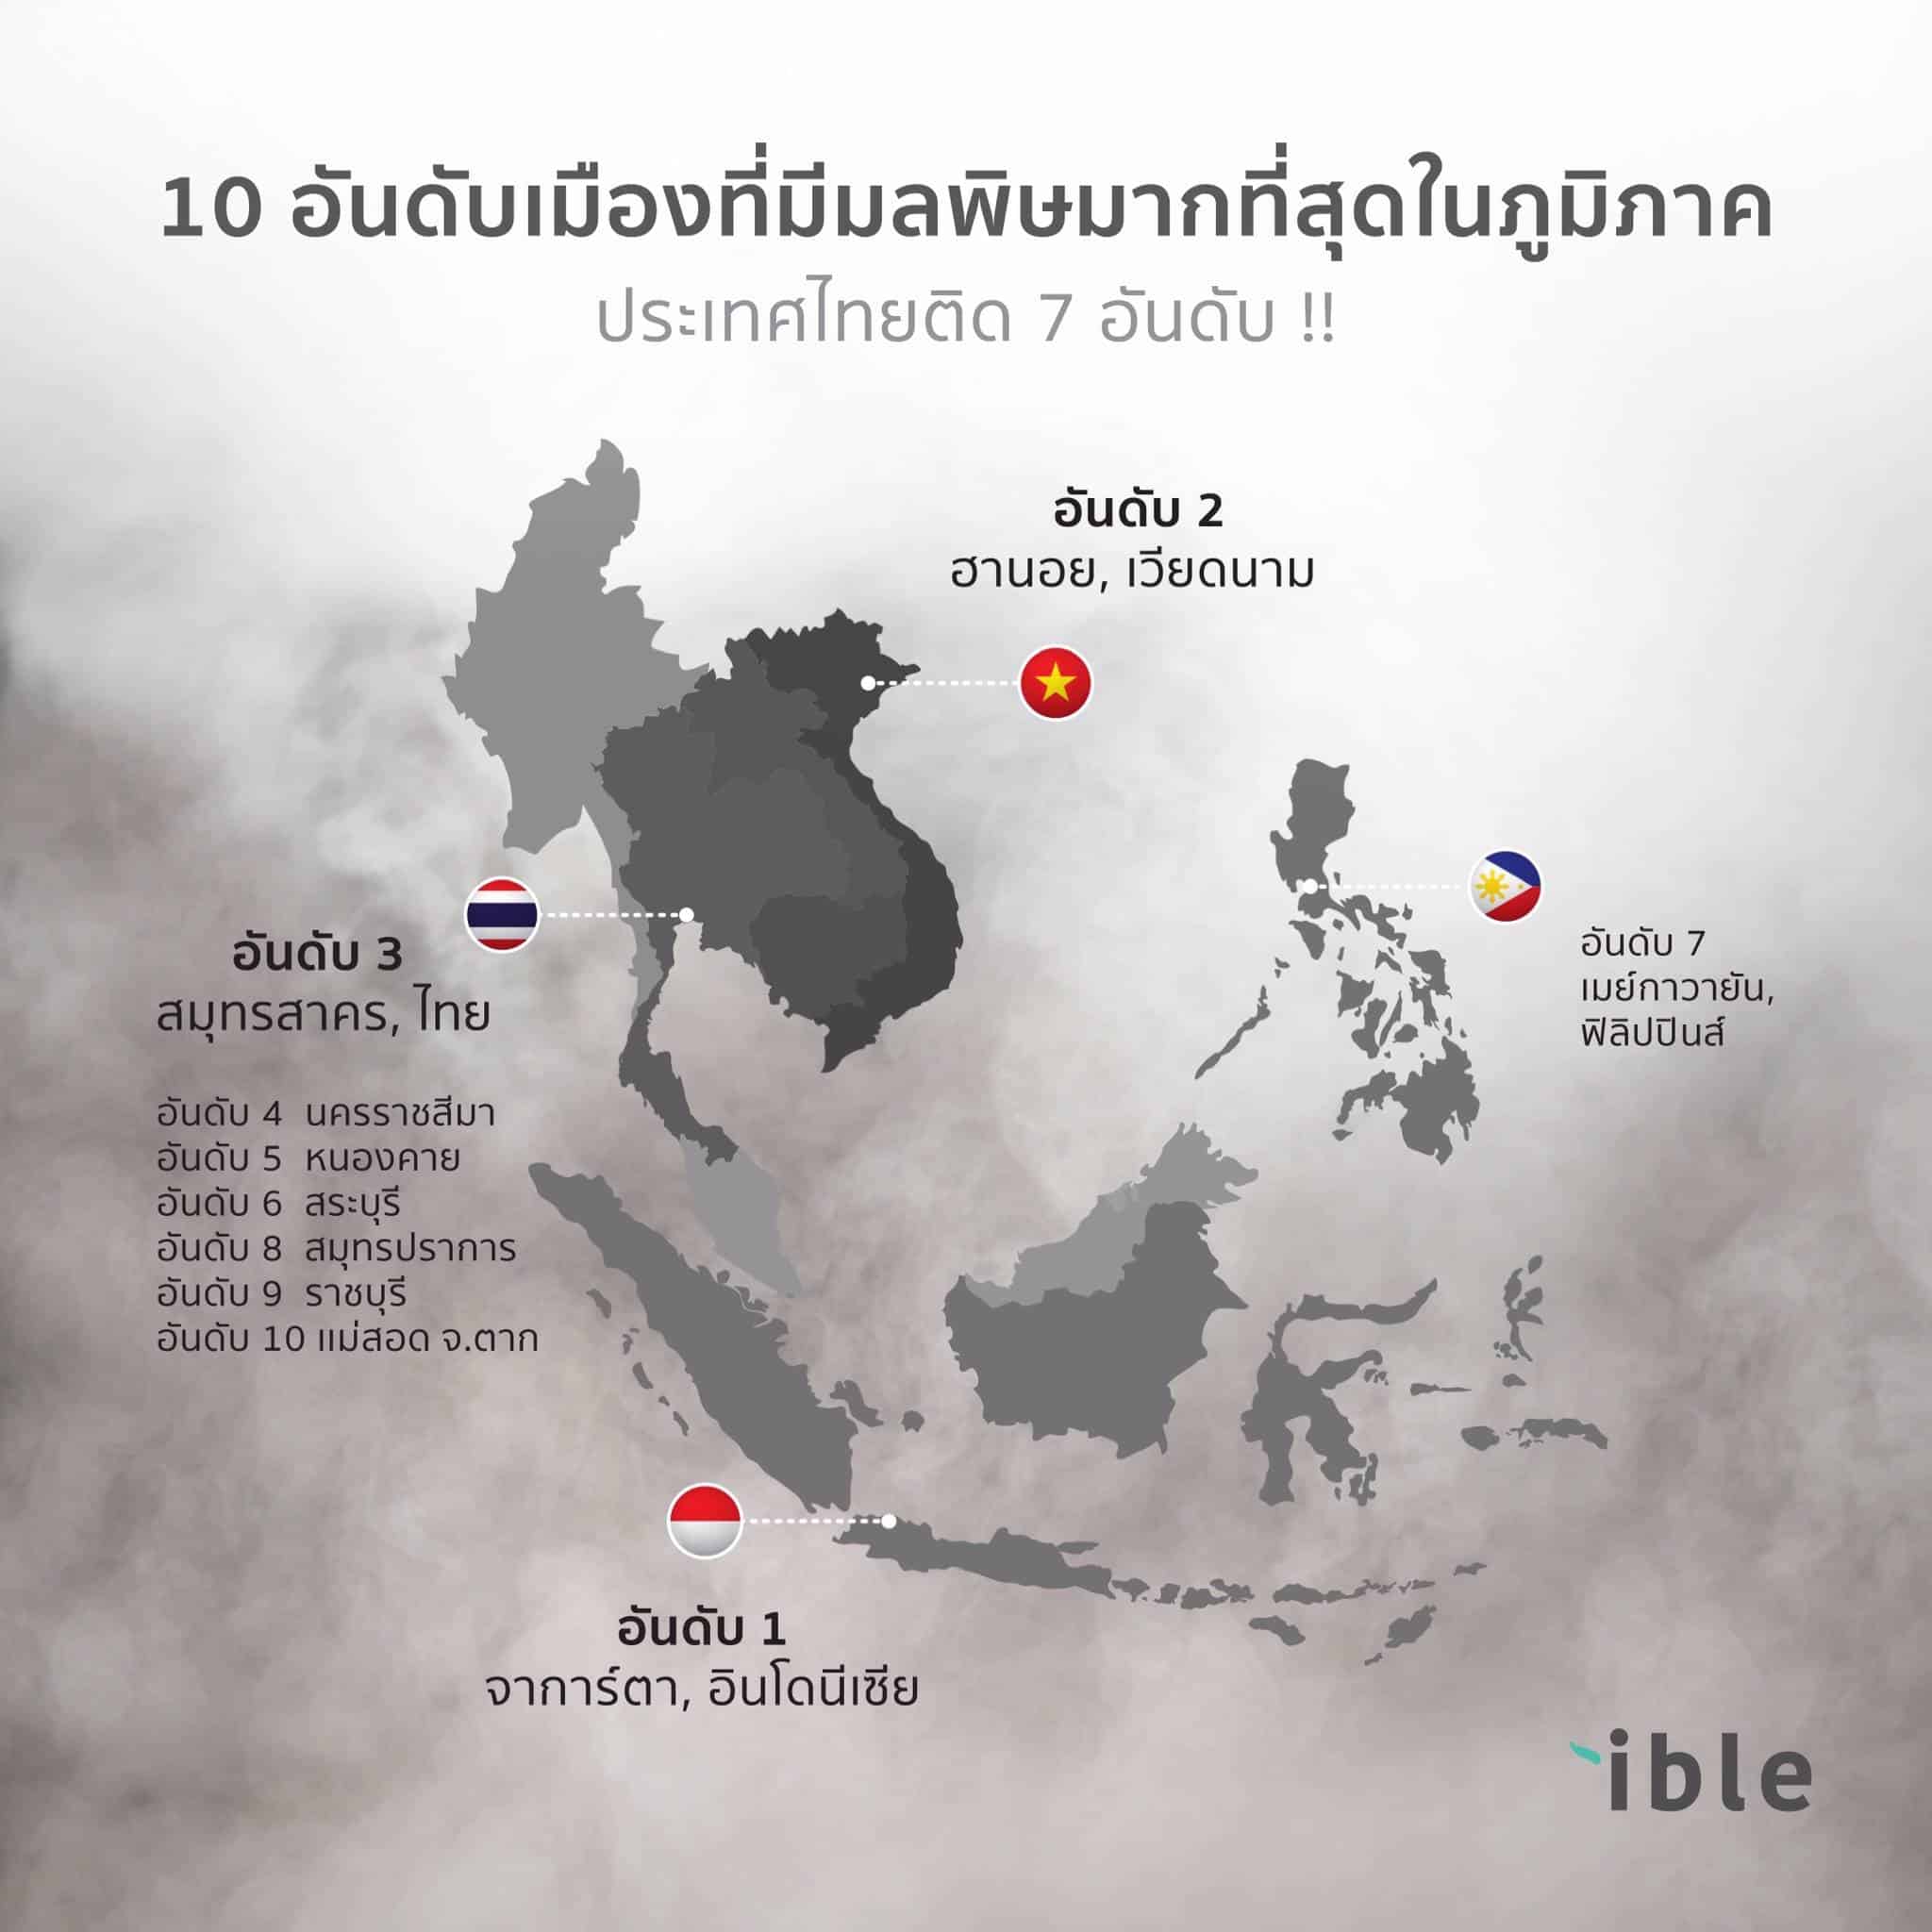 7 จังหวัดในไทย มีปริมาณฝุ่นPM2.5 เข้าขั้นวิกฤต “ติดอันดับโลก”